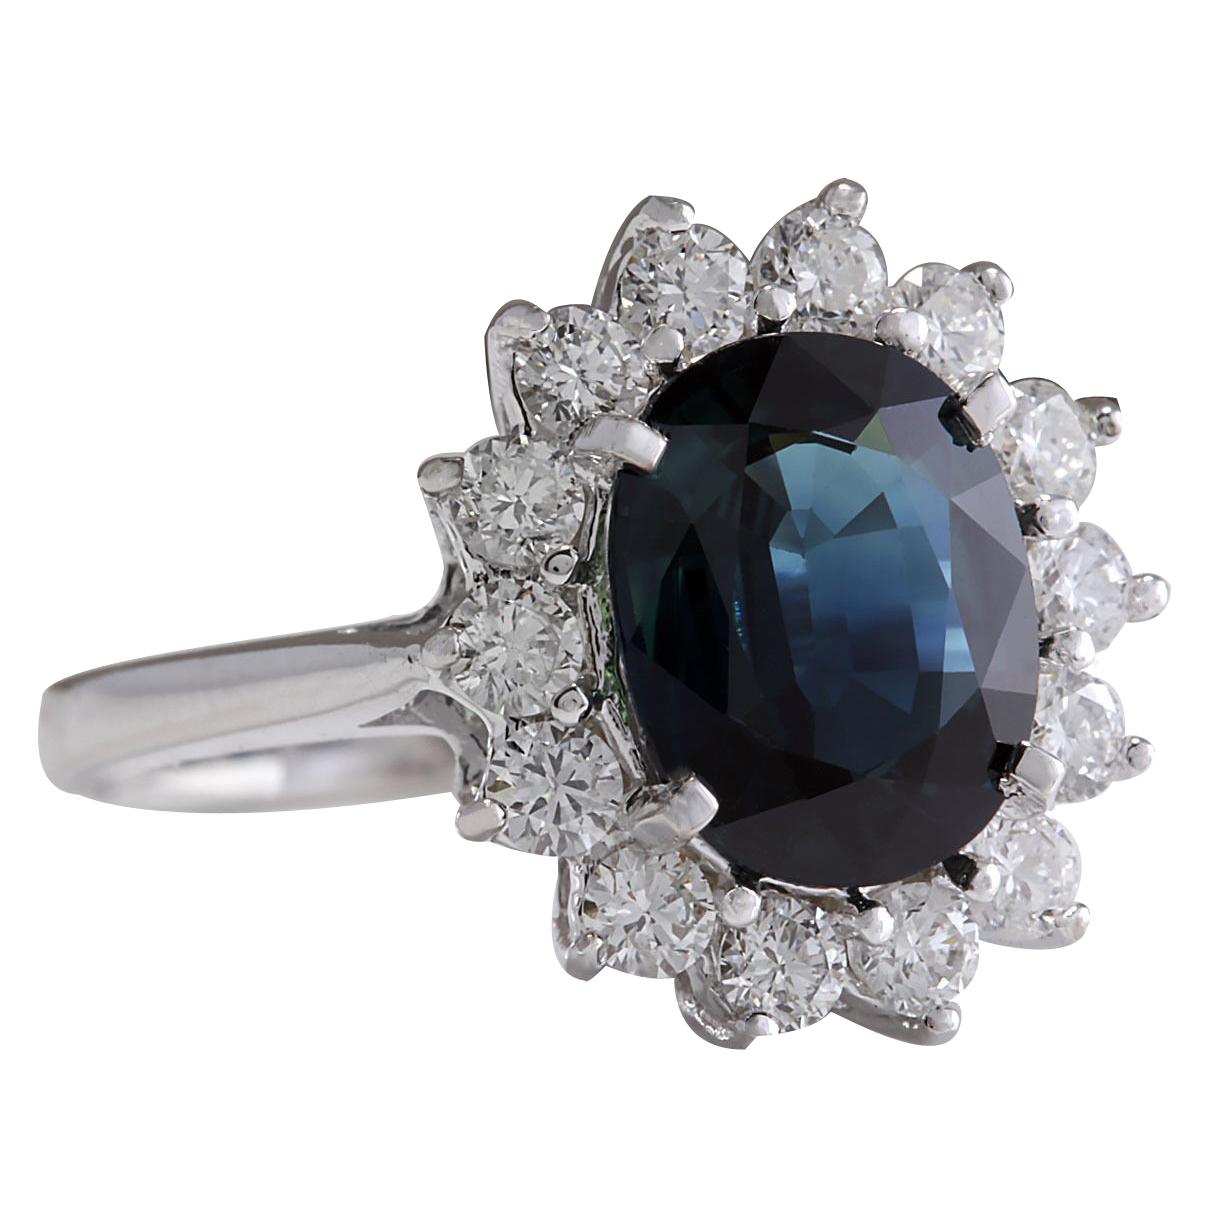 3.56 Carat Natural Sapphire 14 Karat White Gold Diamond Ring
Stamped: 14K White Gold
Total Ring Weight: 4.0 Grams
Total Natural Sapphire Weight is 2.82 Carat (Measures: 10.00x8.00 mm)
Color: Blue
Total Natural Diamond Weight is 0.74 Carat
Color: